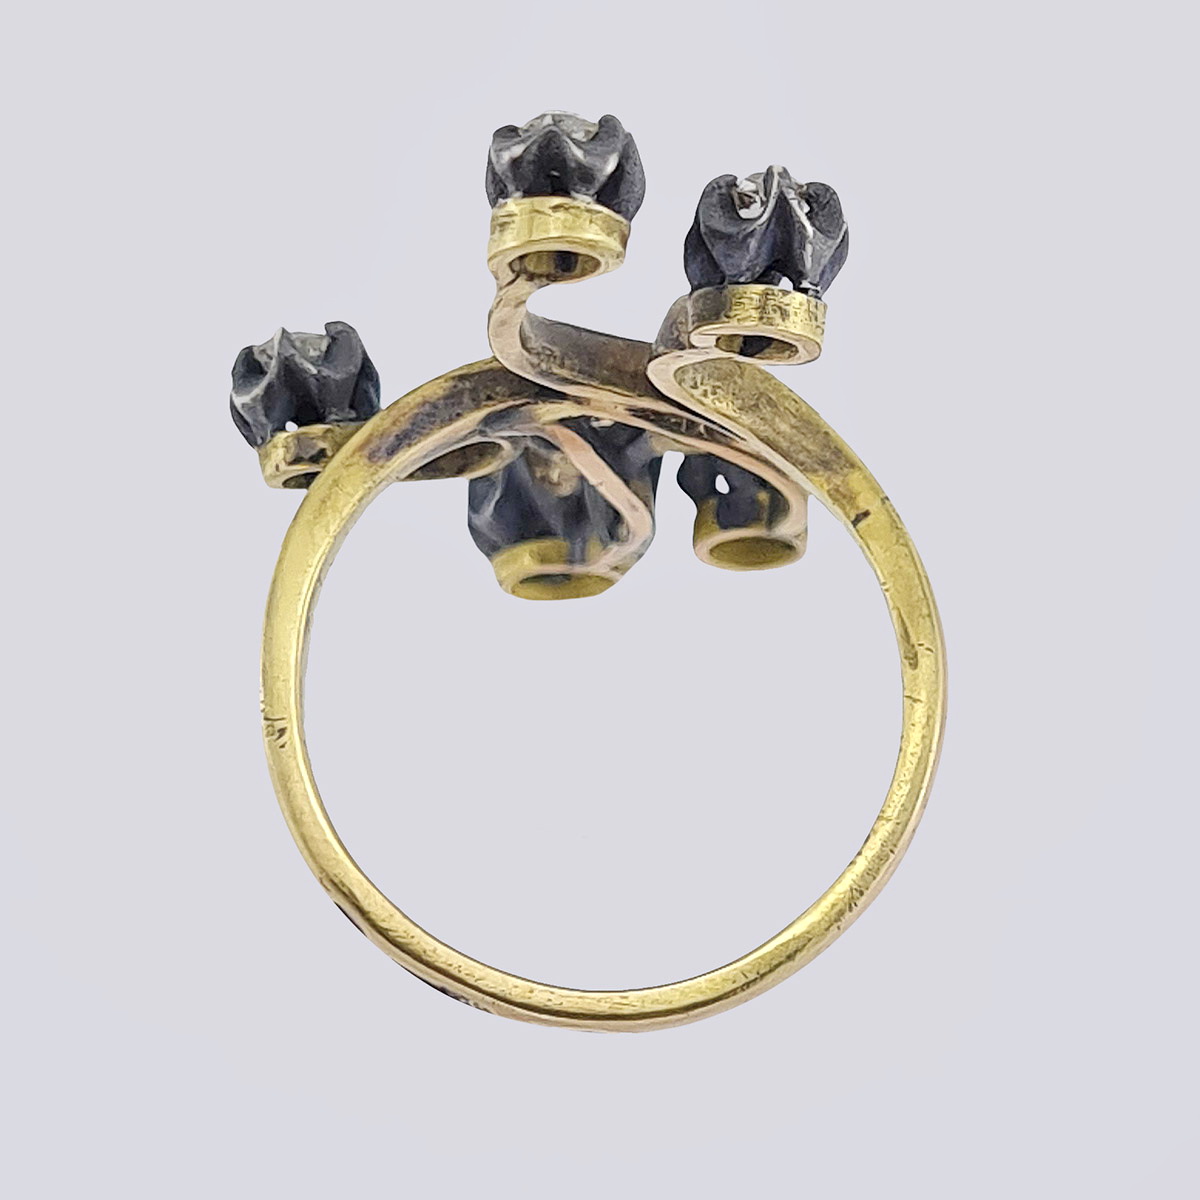 Антикварное золотое кольцо «Ветка» 56 пробы с бриллиантами старой огранки